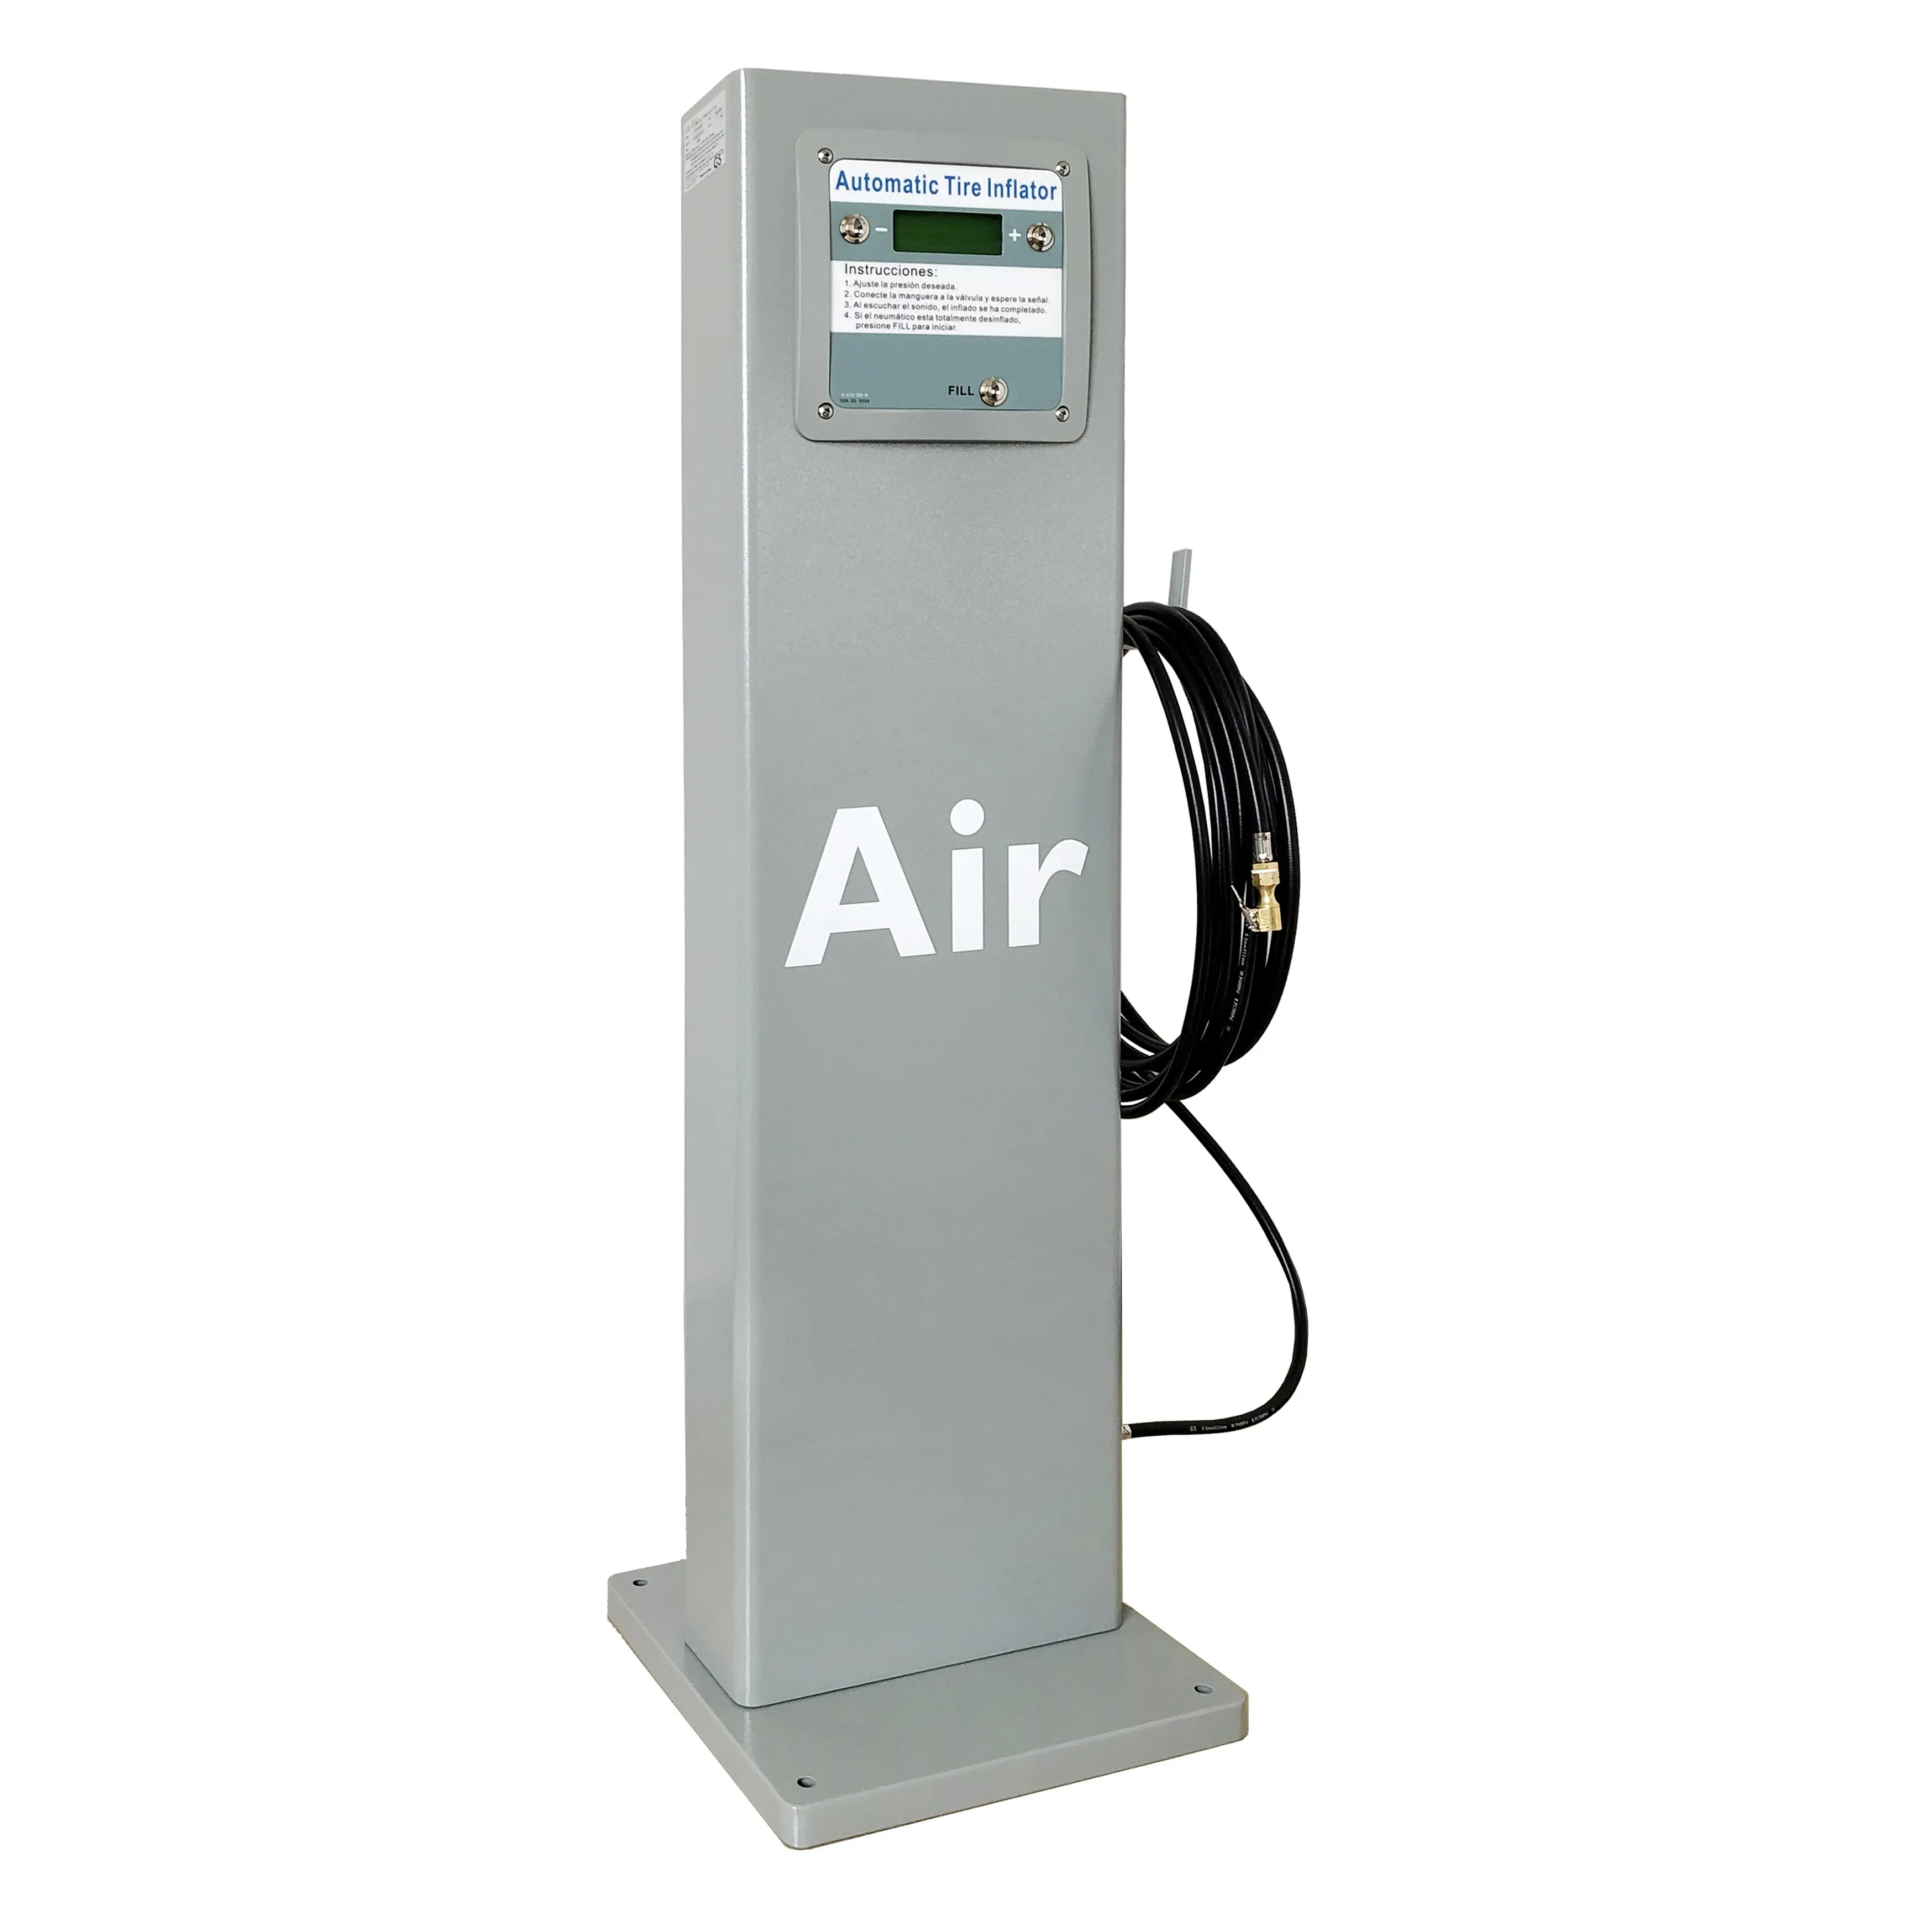 G5 ، مع مقياس ضغط لمحطة الغاز ، نافخة إطارات رقمية ، ماكينة بيع هواء السيارة ، نافخة إطارات رقمية للأماكن الخارجية